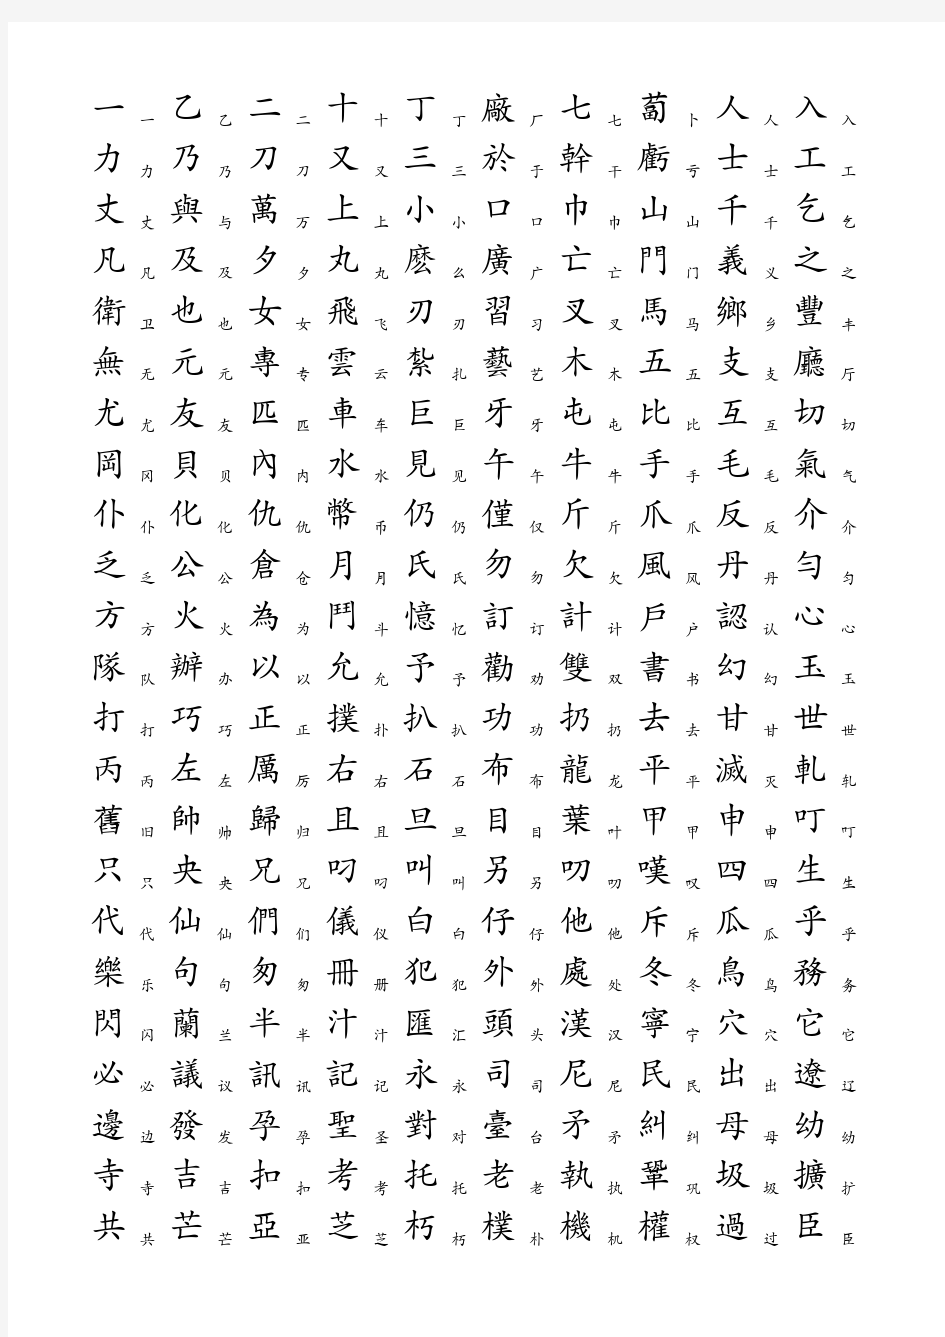 3500个常用汉字繁简转换表